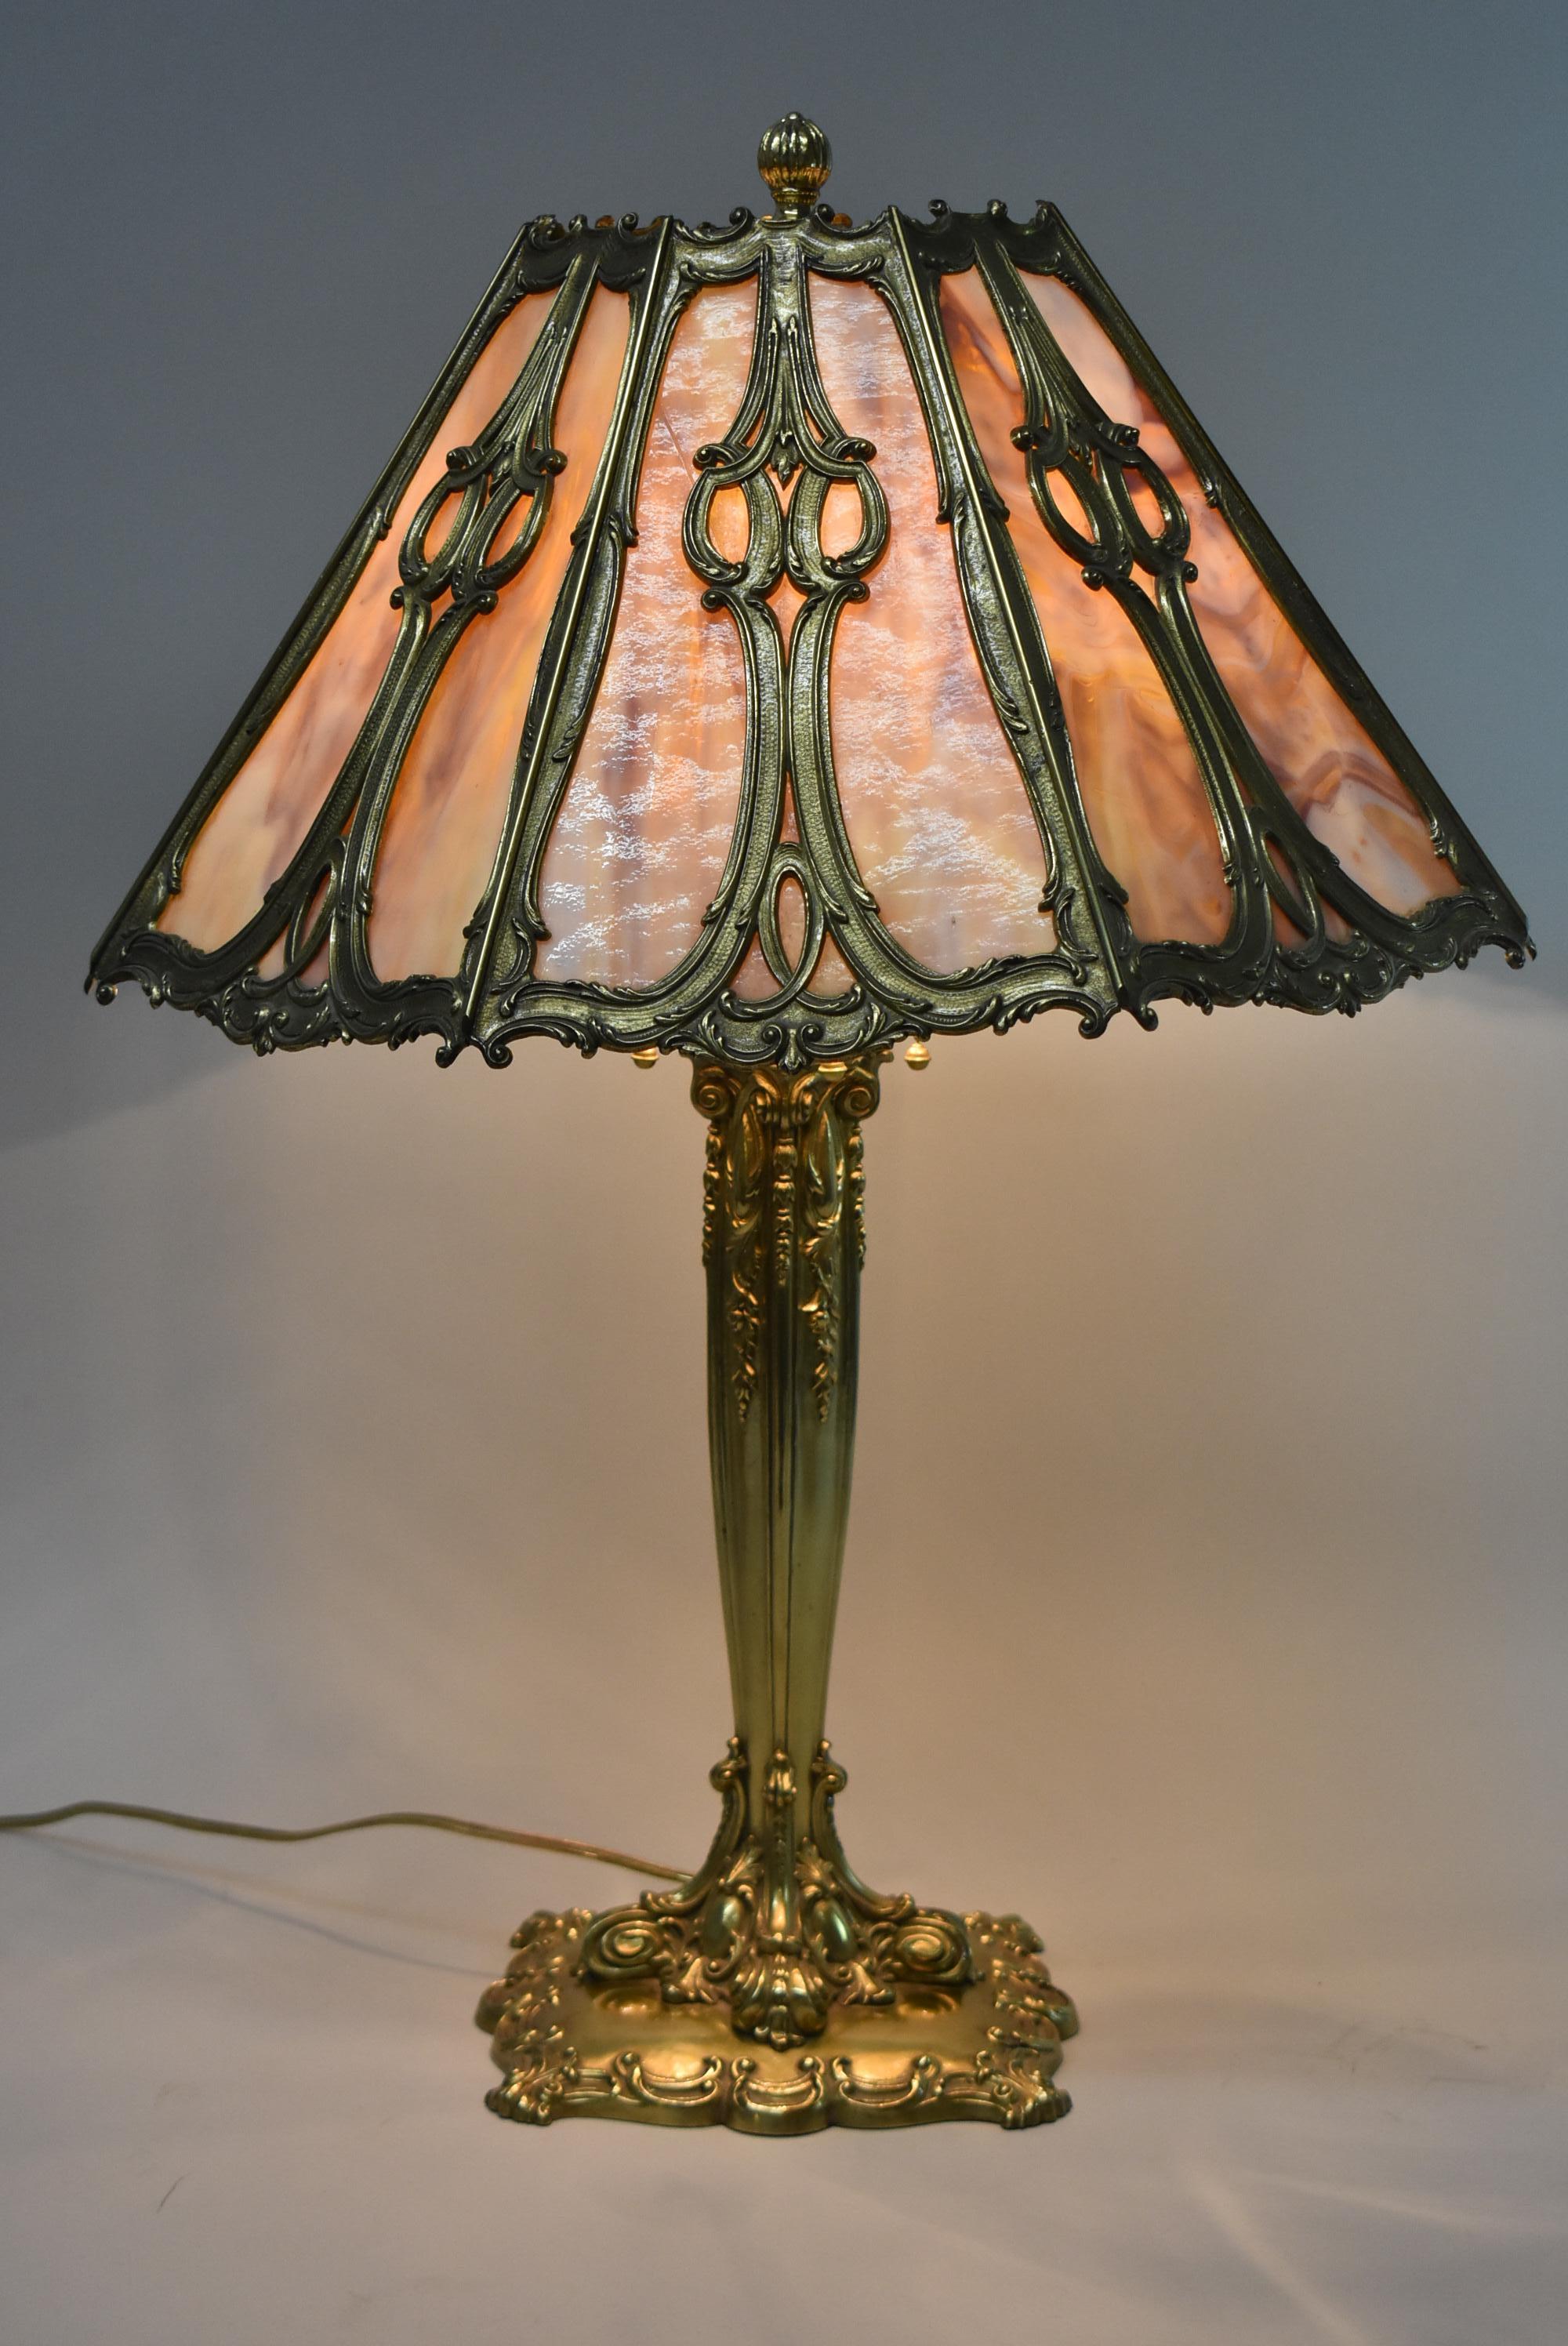 Diese außergewöhnliche Lampe von Bradley & Hubbard ist auf 1908 datiert. Der schwere Messingsockel hat 4 Bryant-Fassungen mit Eichelzügen. Der Sockel ist auf der Unterseite signiert. Es gibt keine Brüche im Schirm und das Stück wurde neu verkabelt.